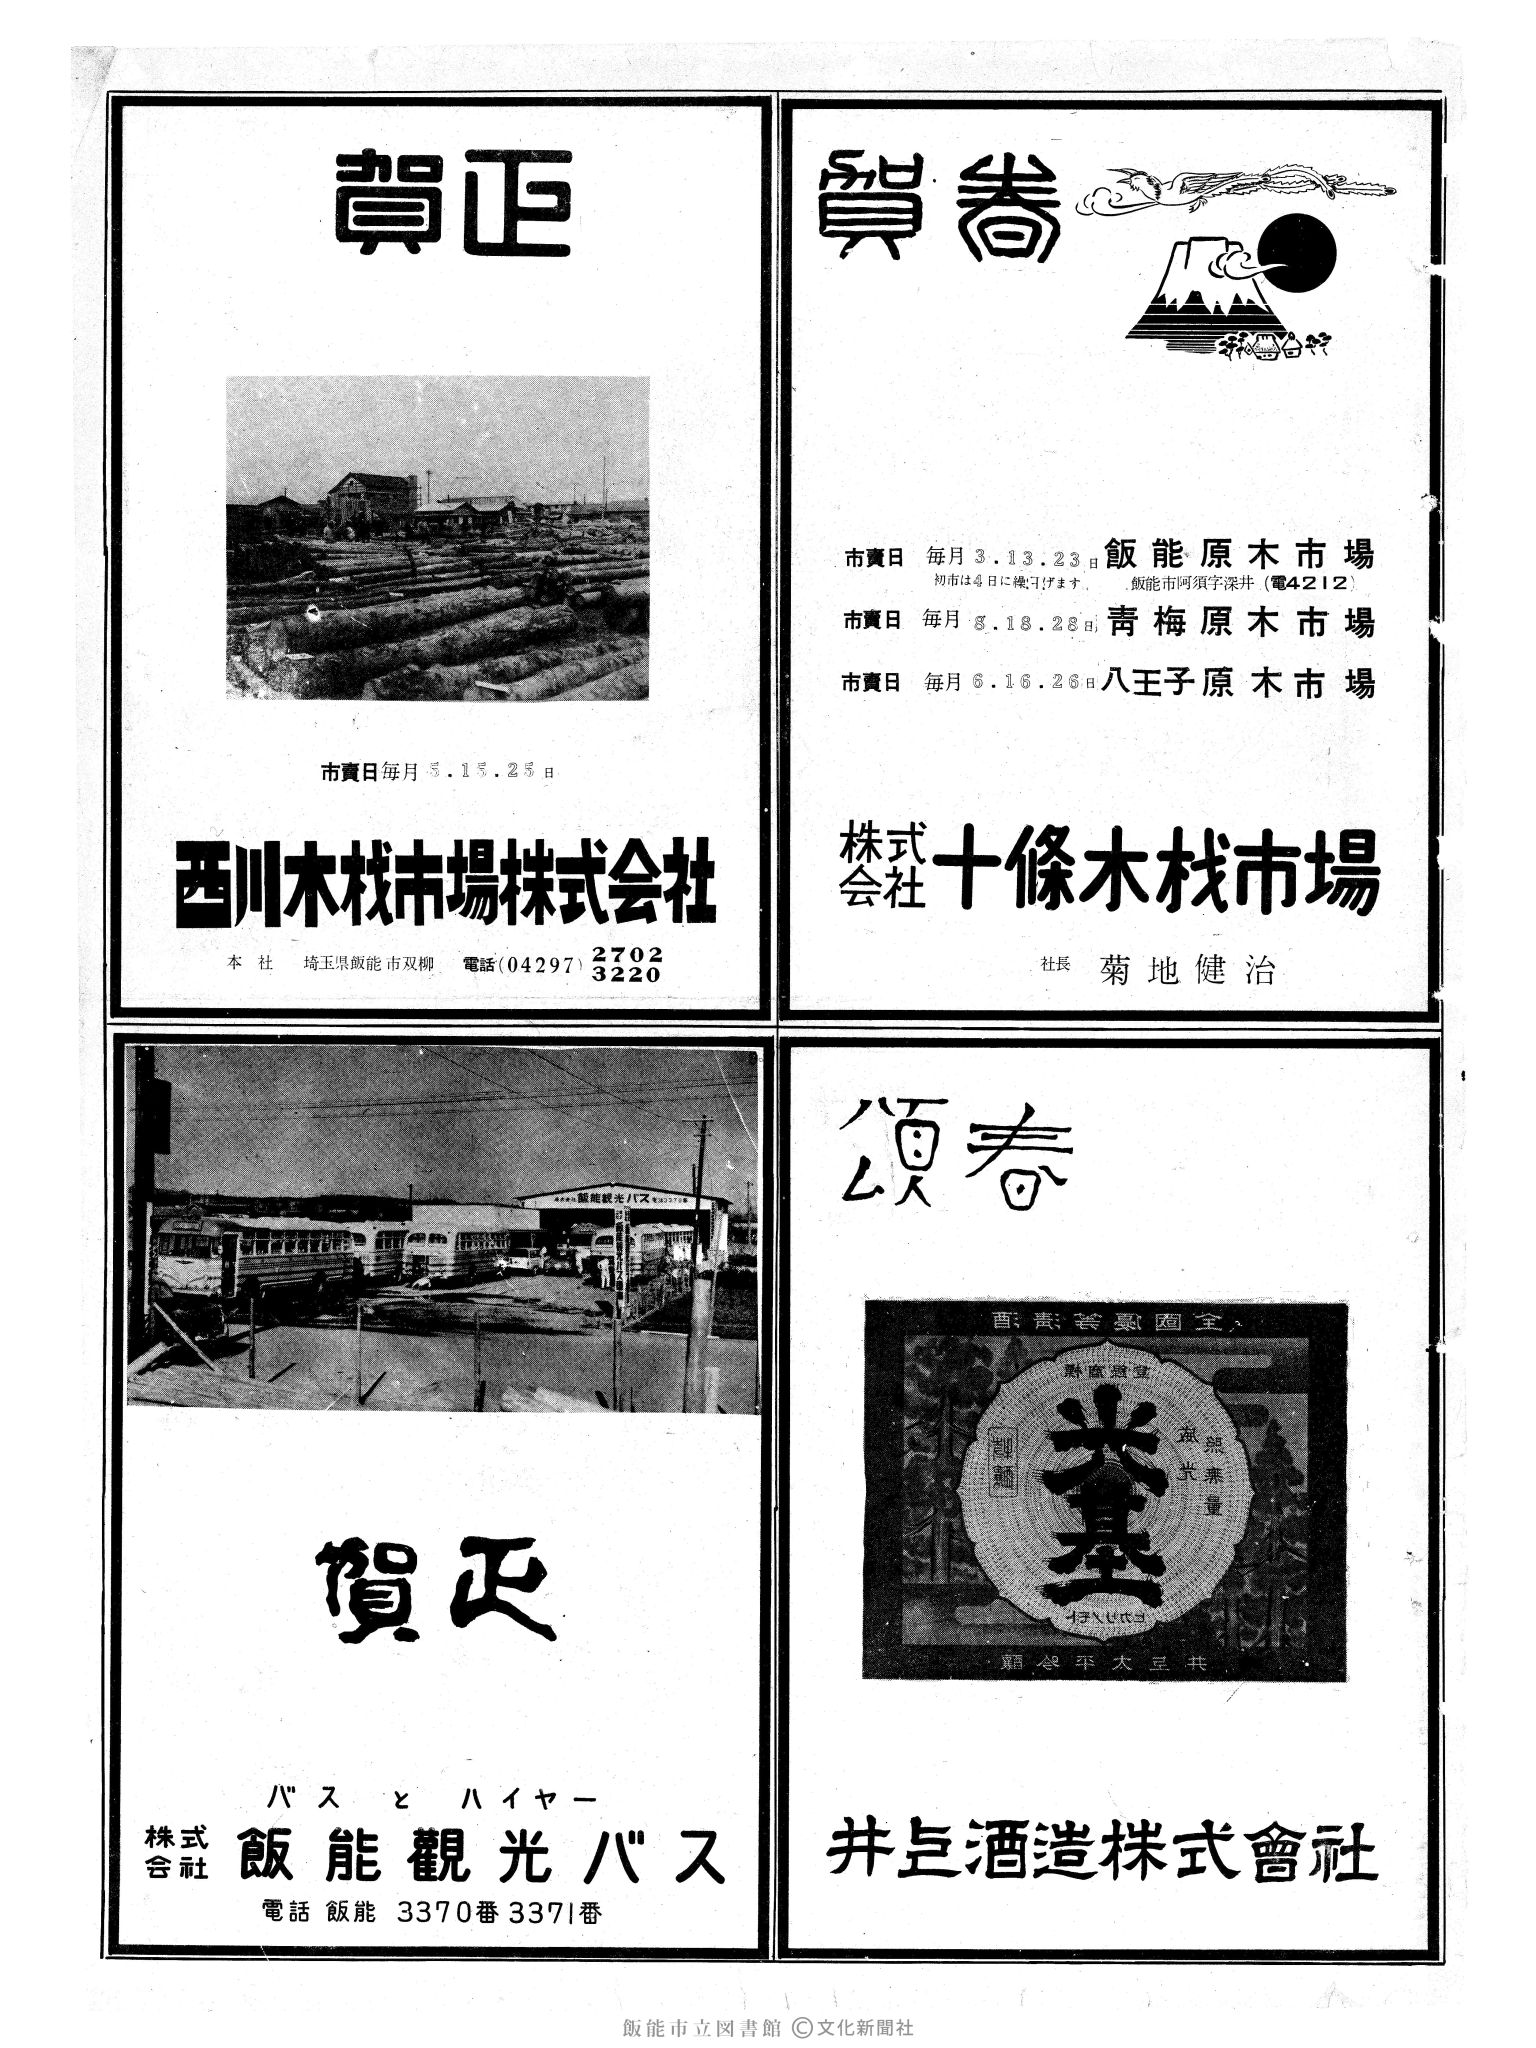 昭和37年1月1日3面 (第4036号) 広告ページ